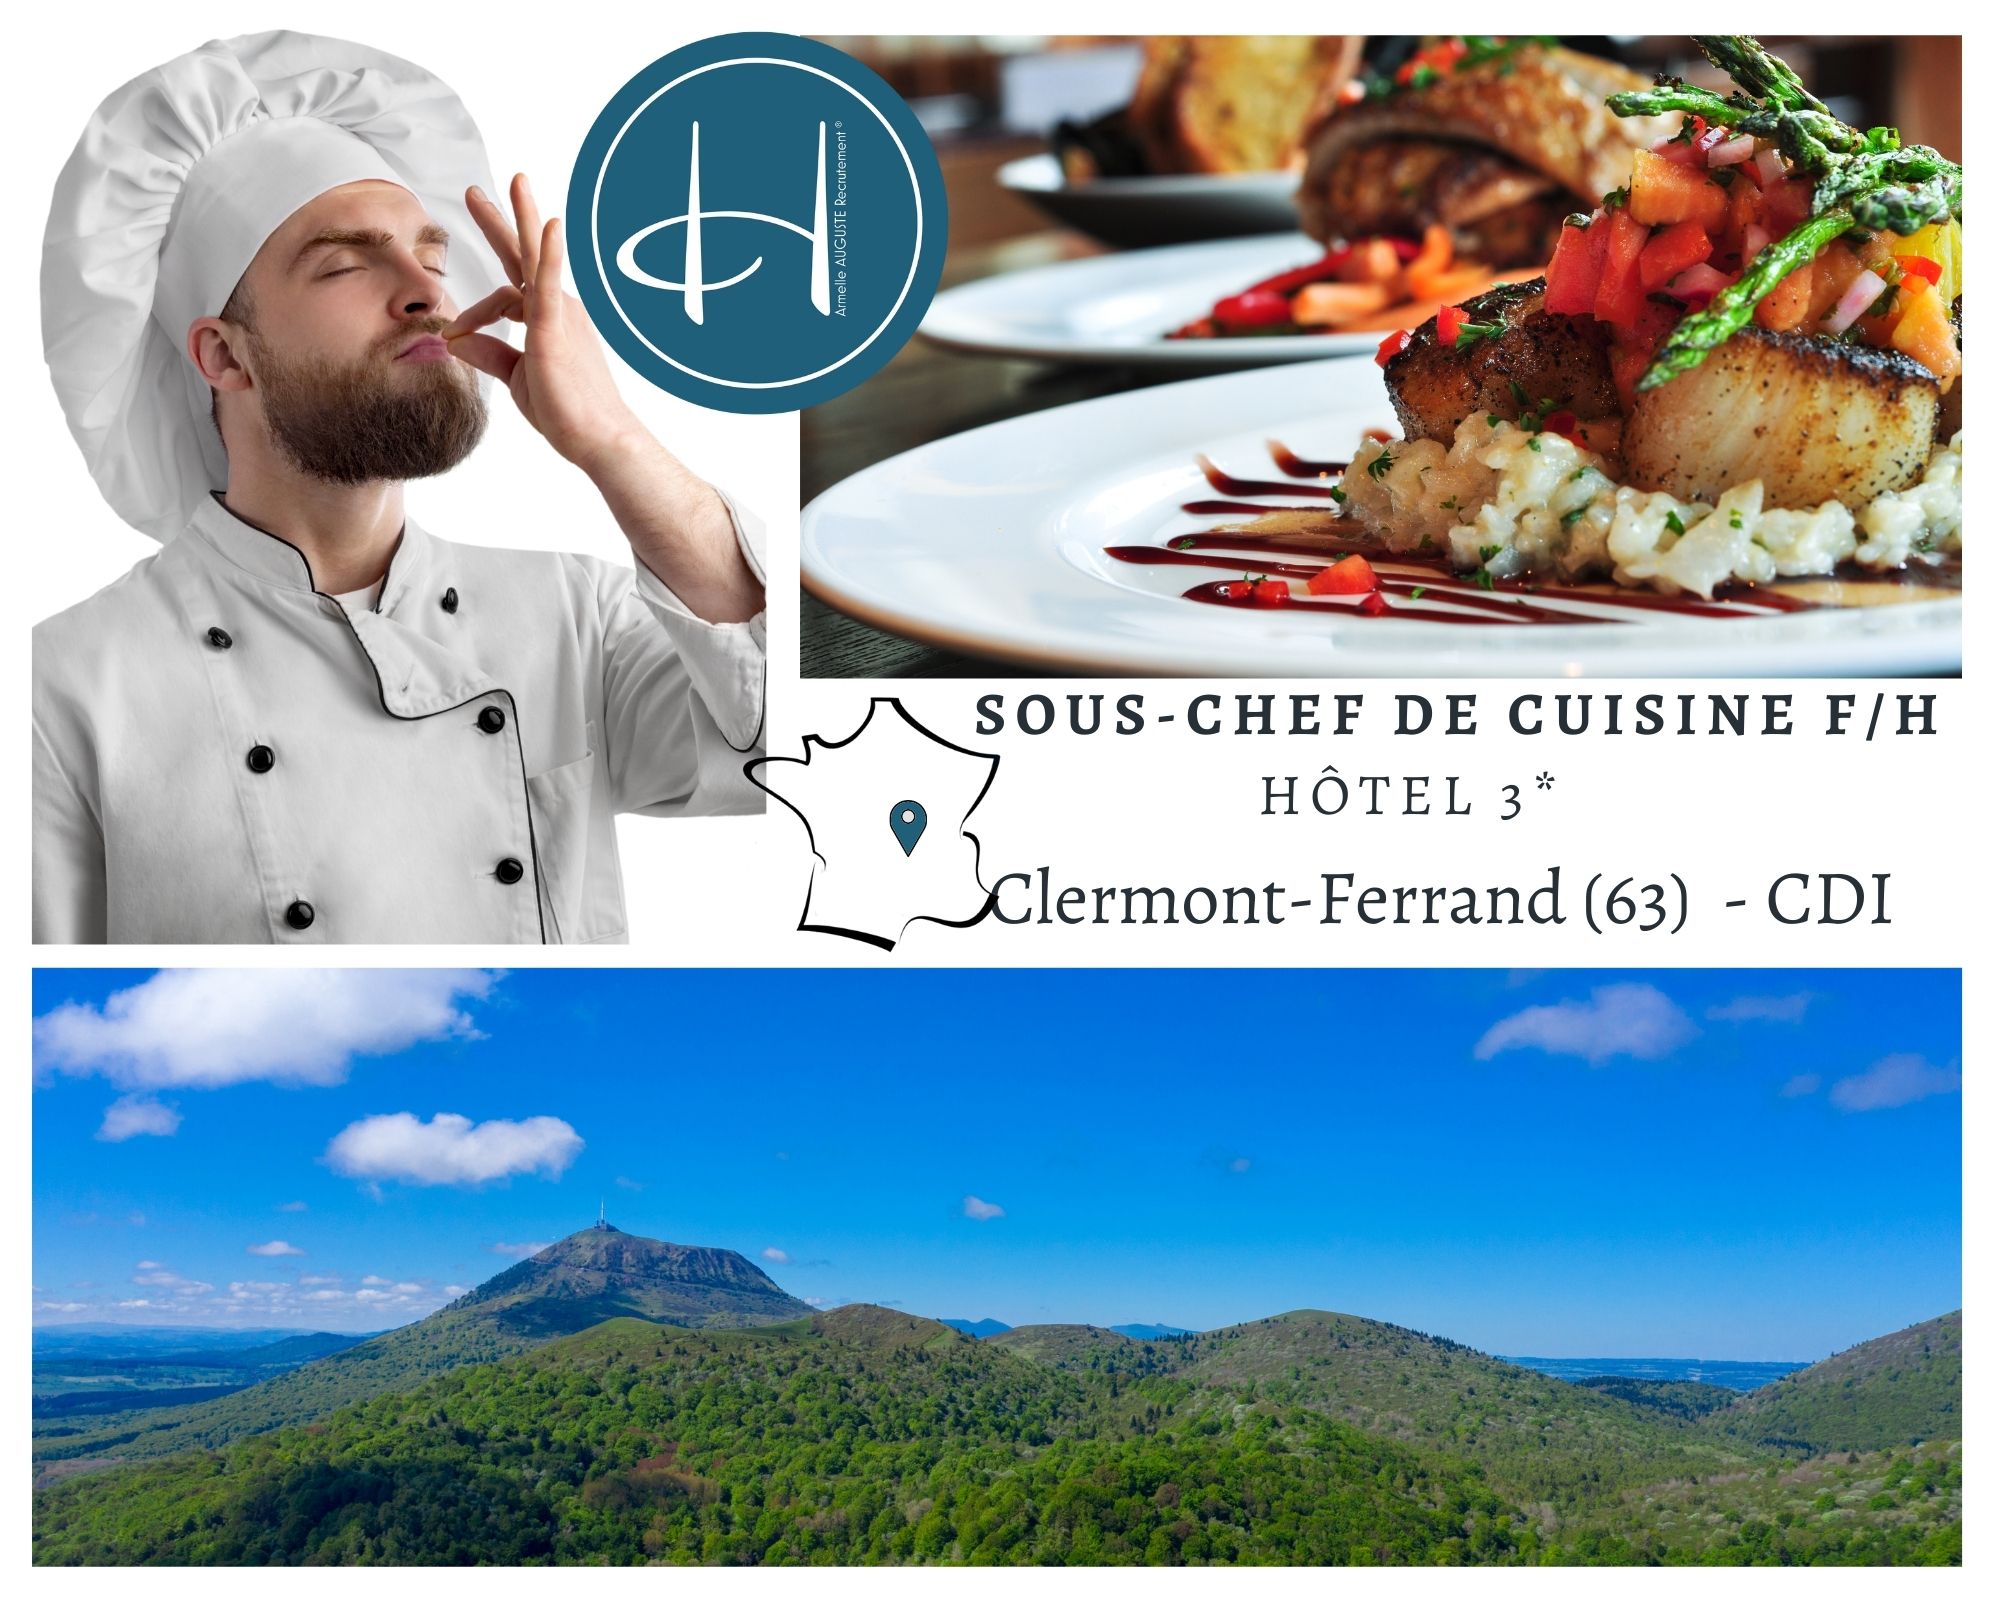 Recrutement: Second de cuisine F/H chez Armelle AUGUSTE Recrutement® à Clermont-Ferrand